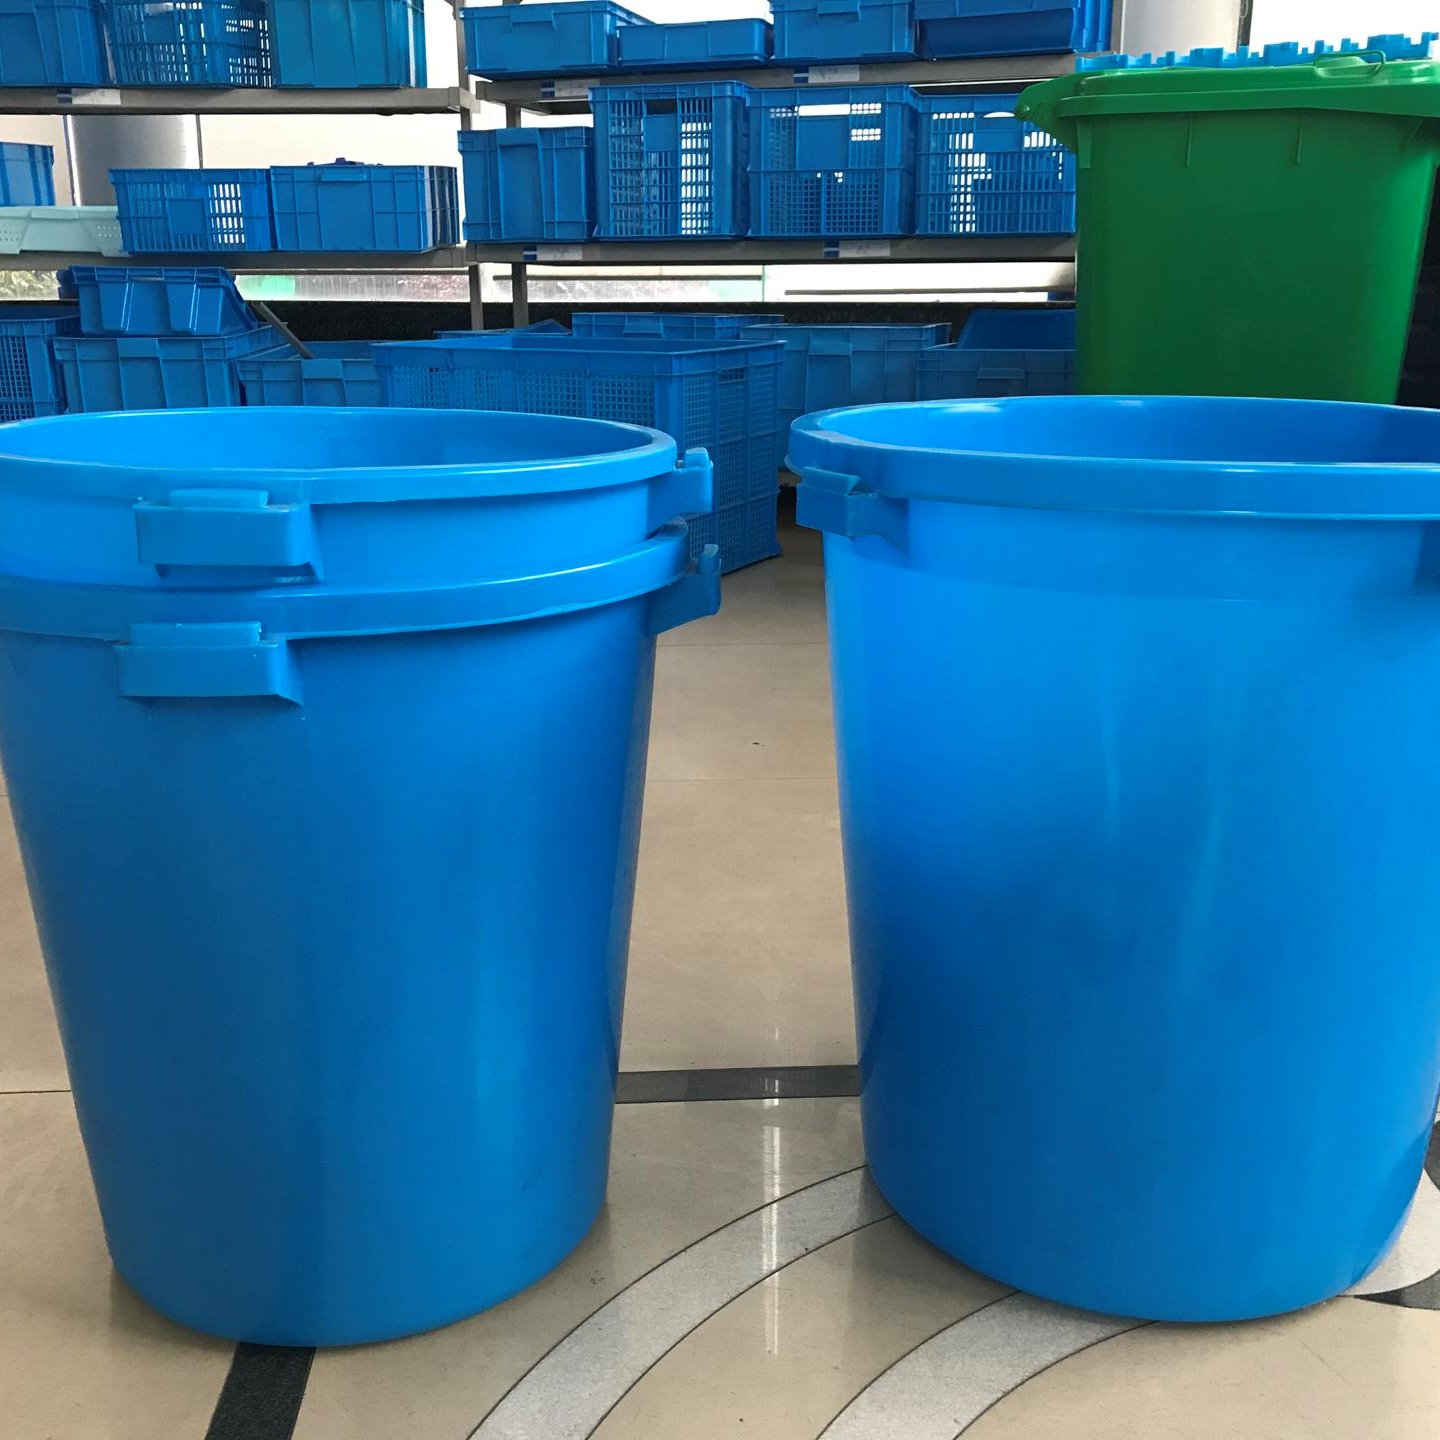 上海物豪塑料厂家直销可配盖农·工业用圆桶系列100L耐腐蚀无毒无味塑胶圆桶